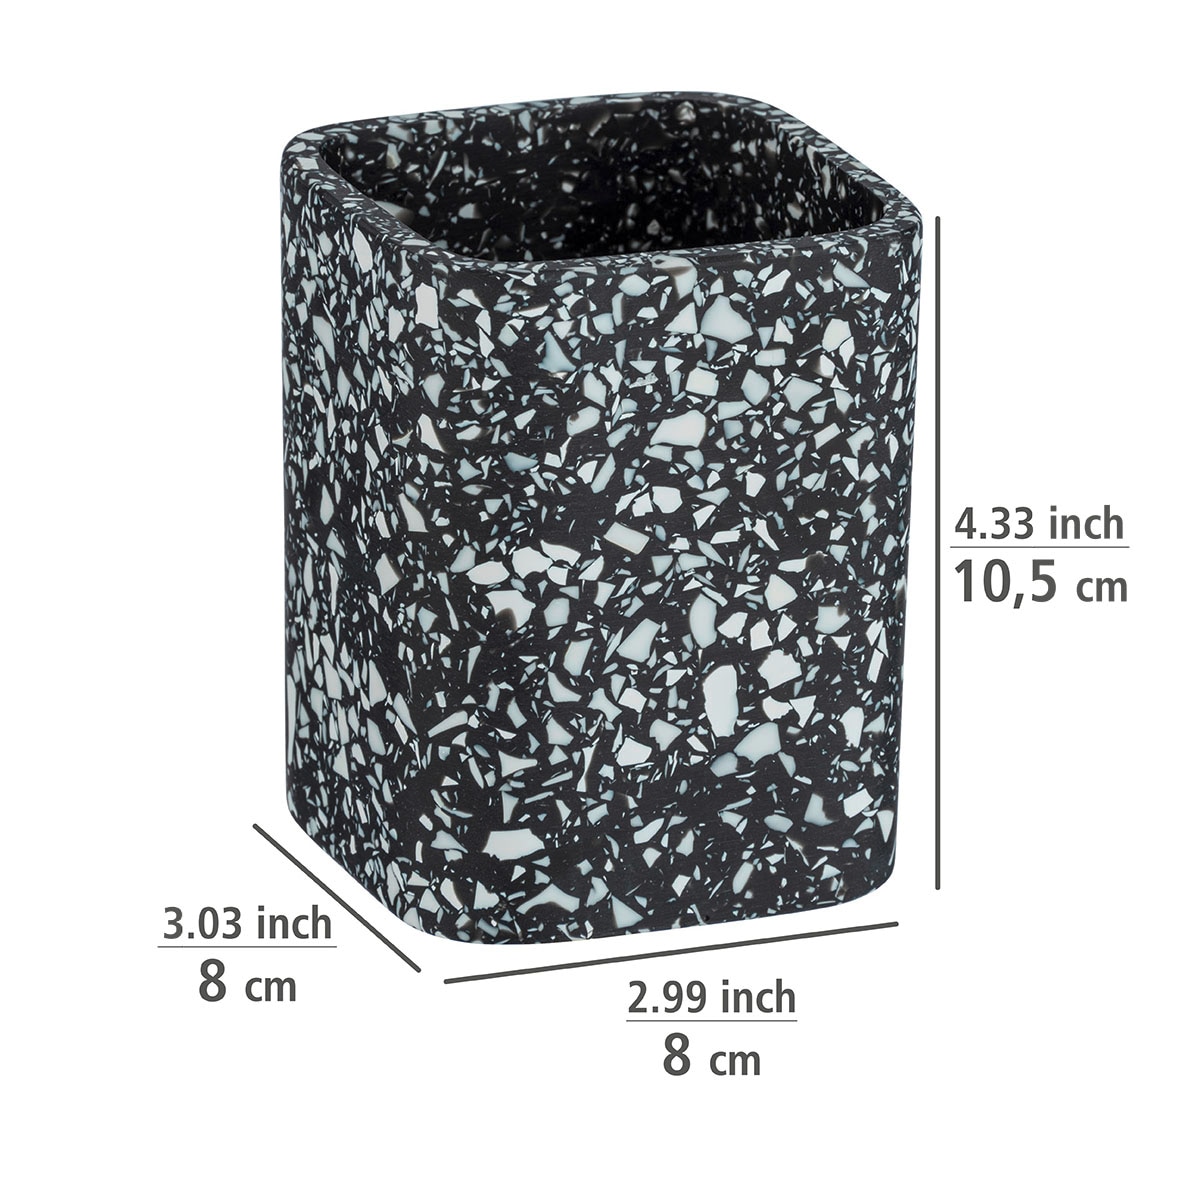 WENKO Zahnputzbecher »Terrazzo«, schwarz, aus Polyresin gefertigt